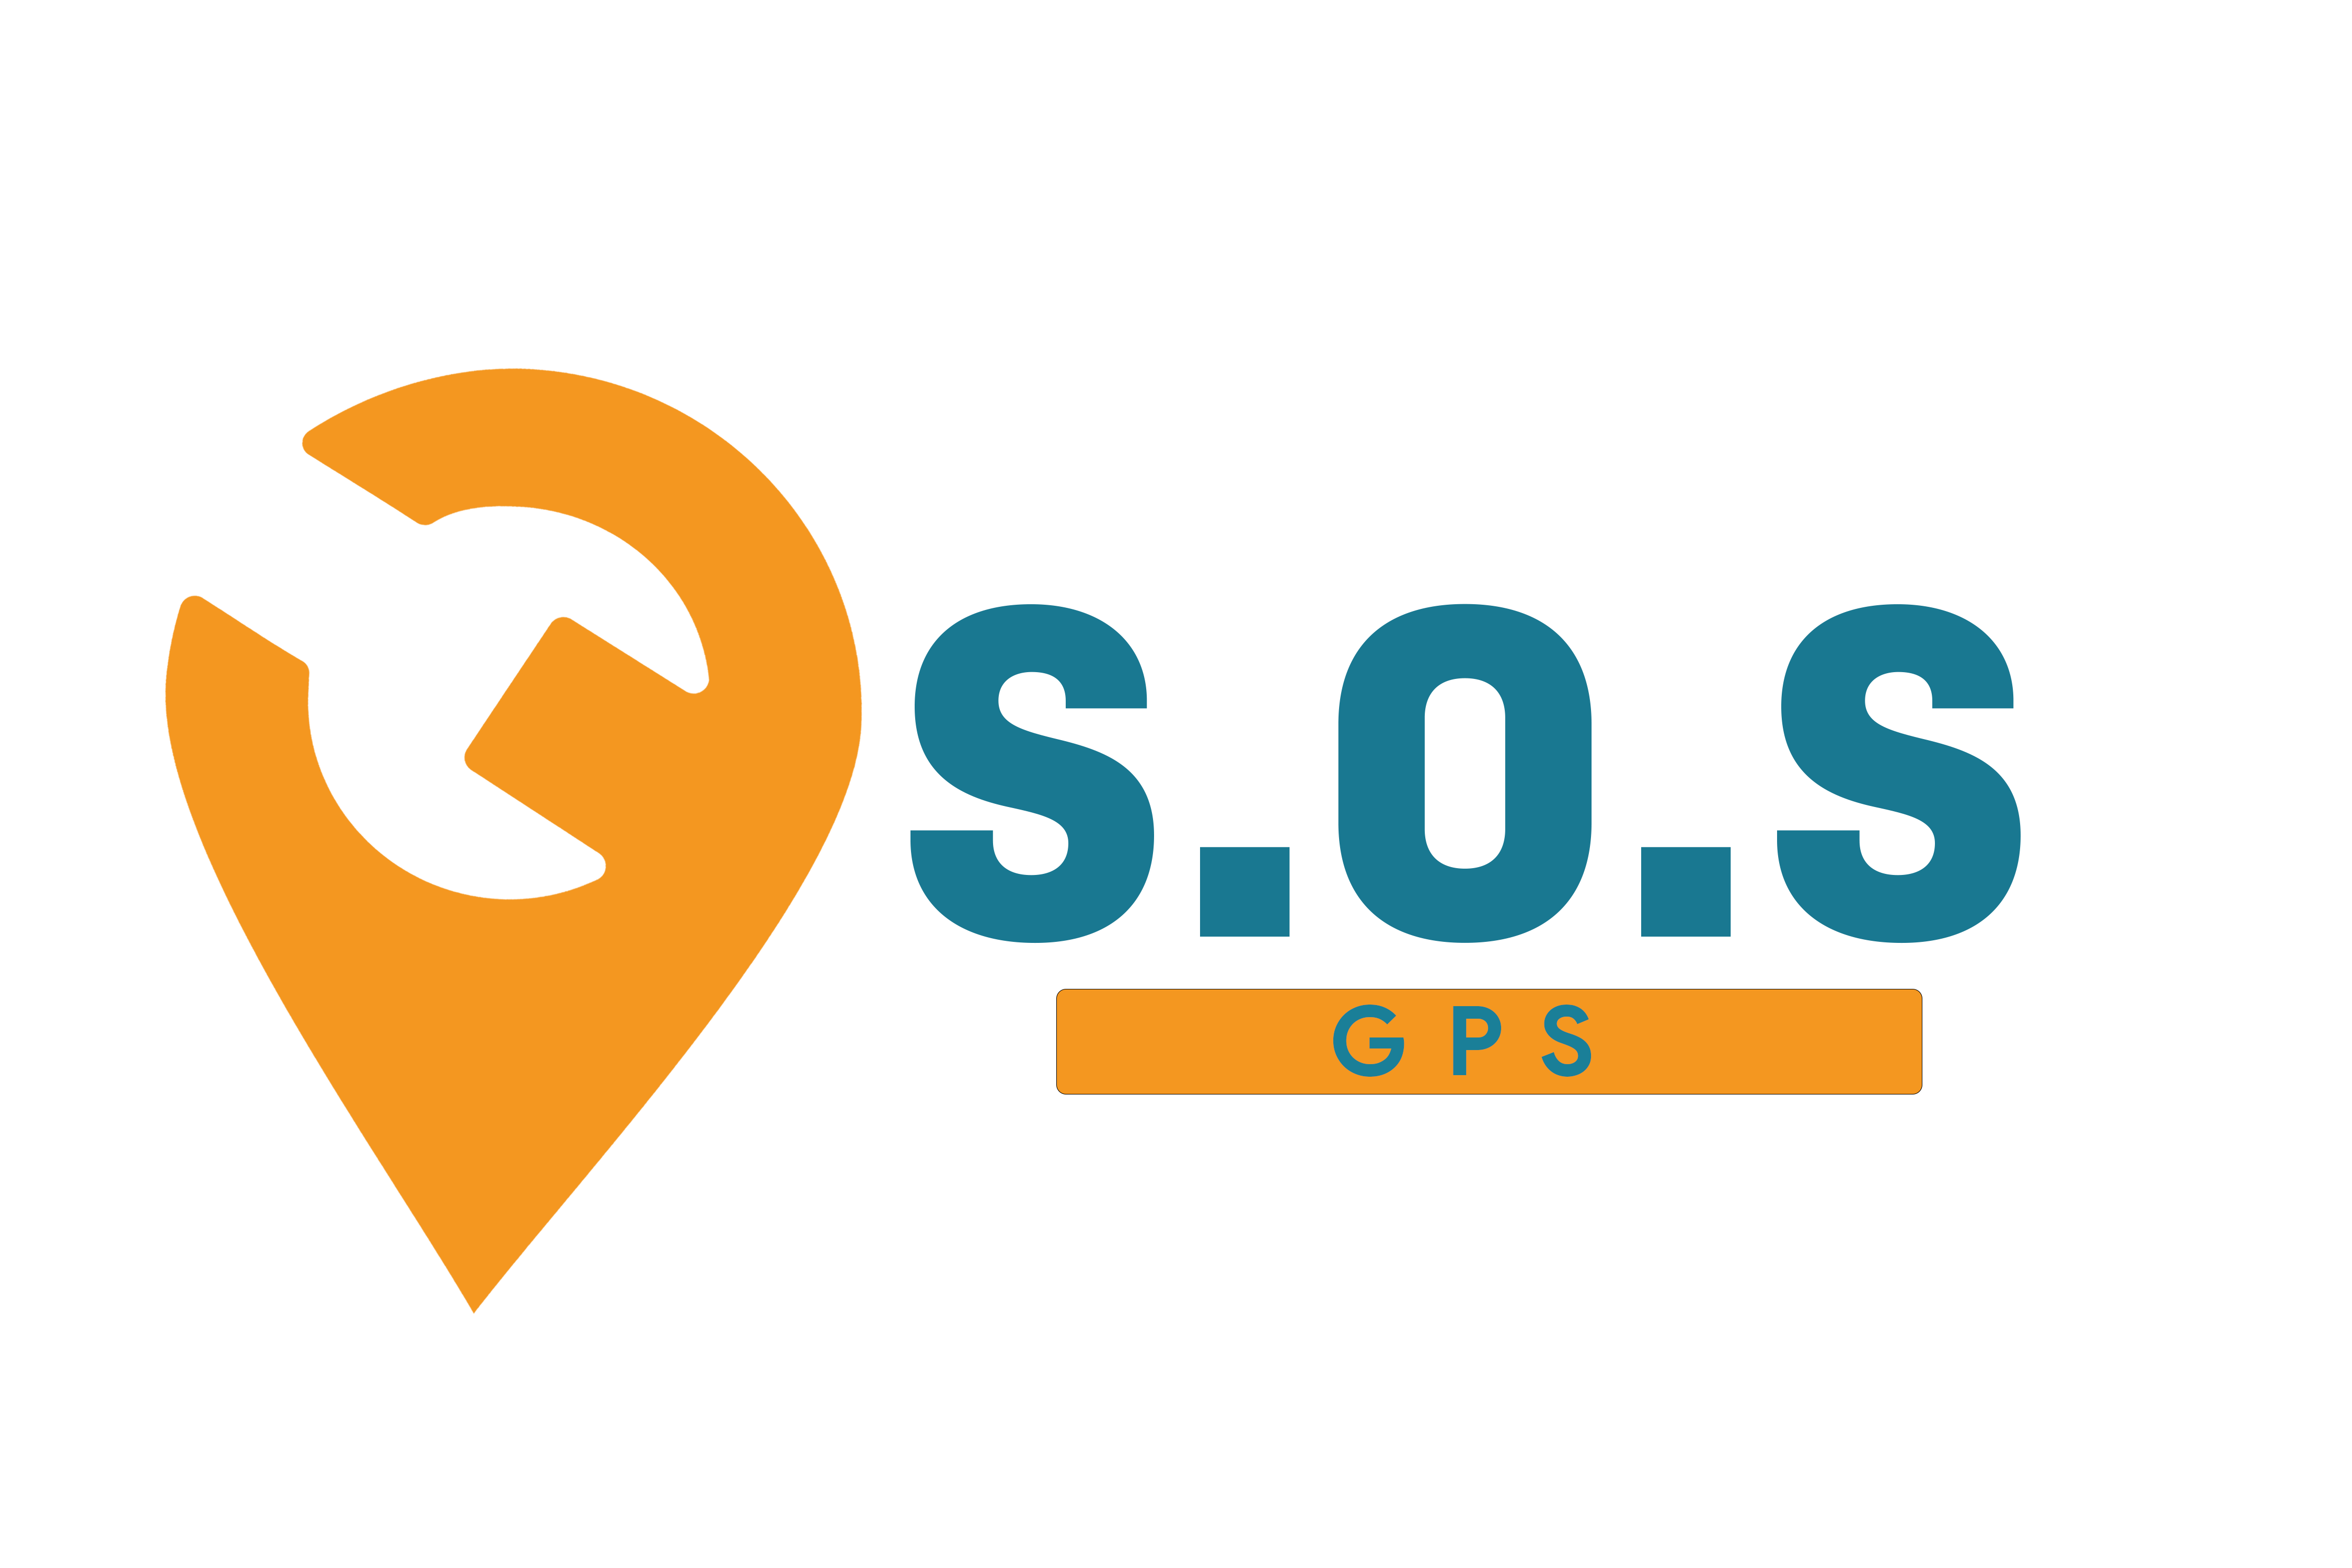 SOS Gps